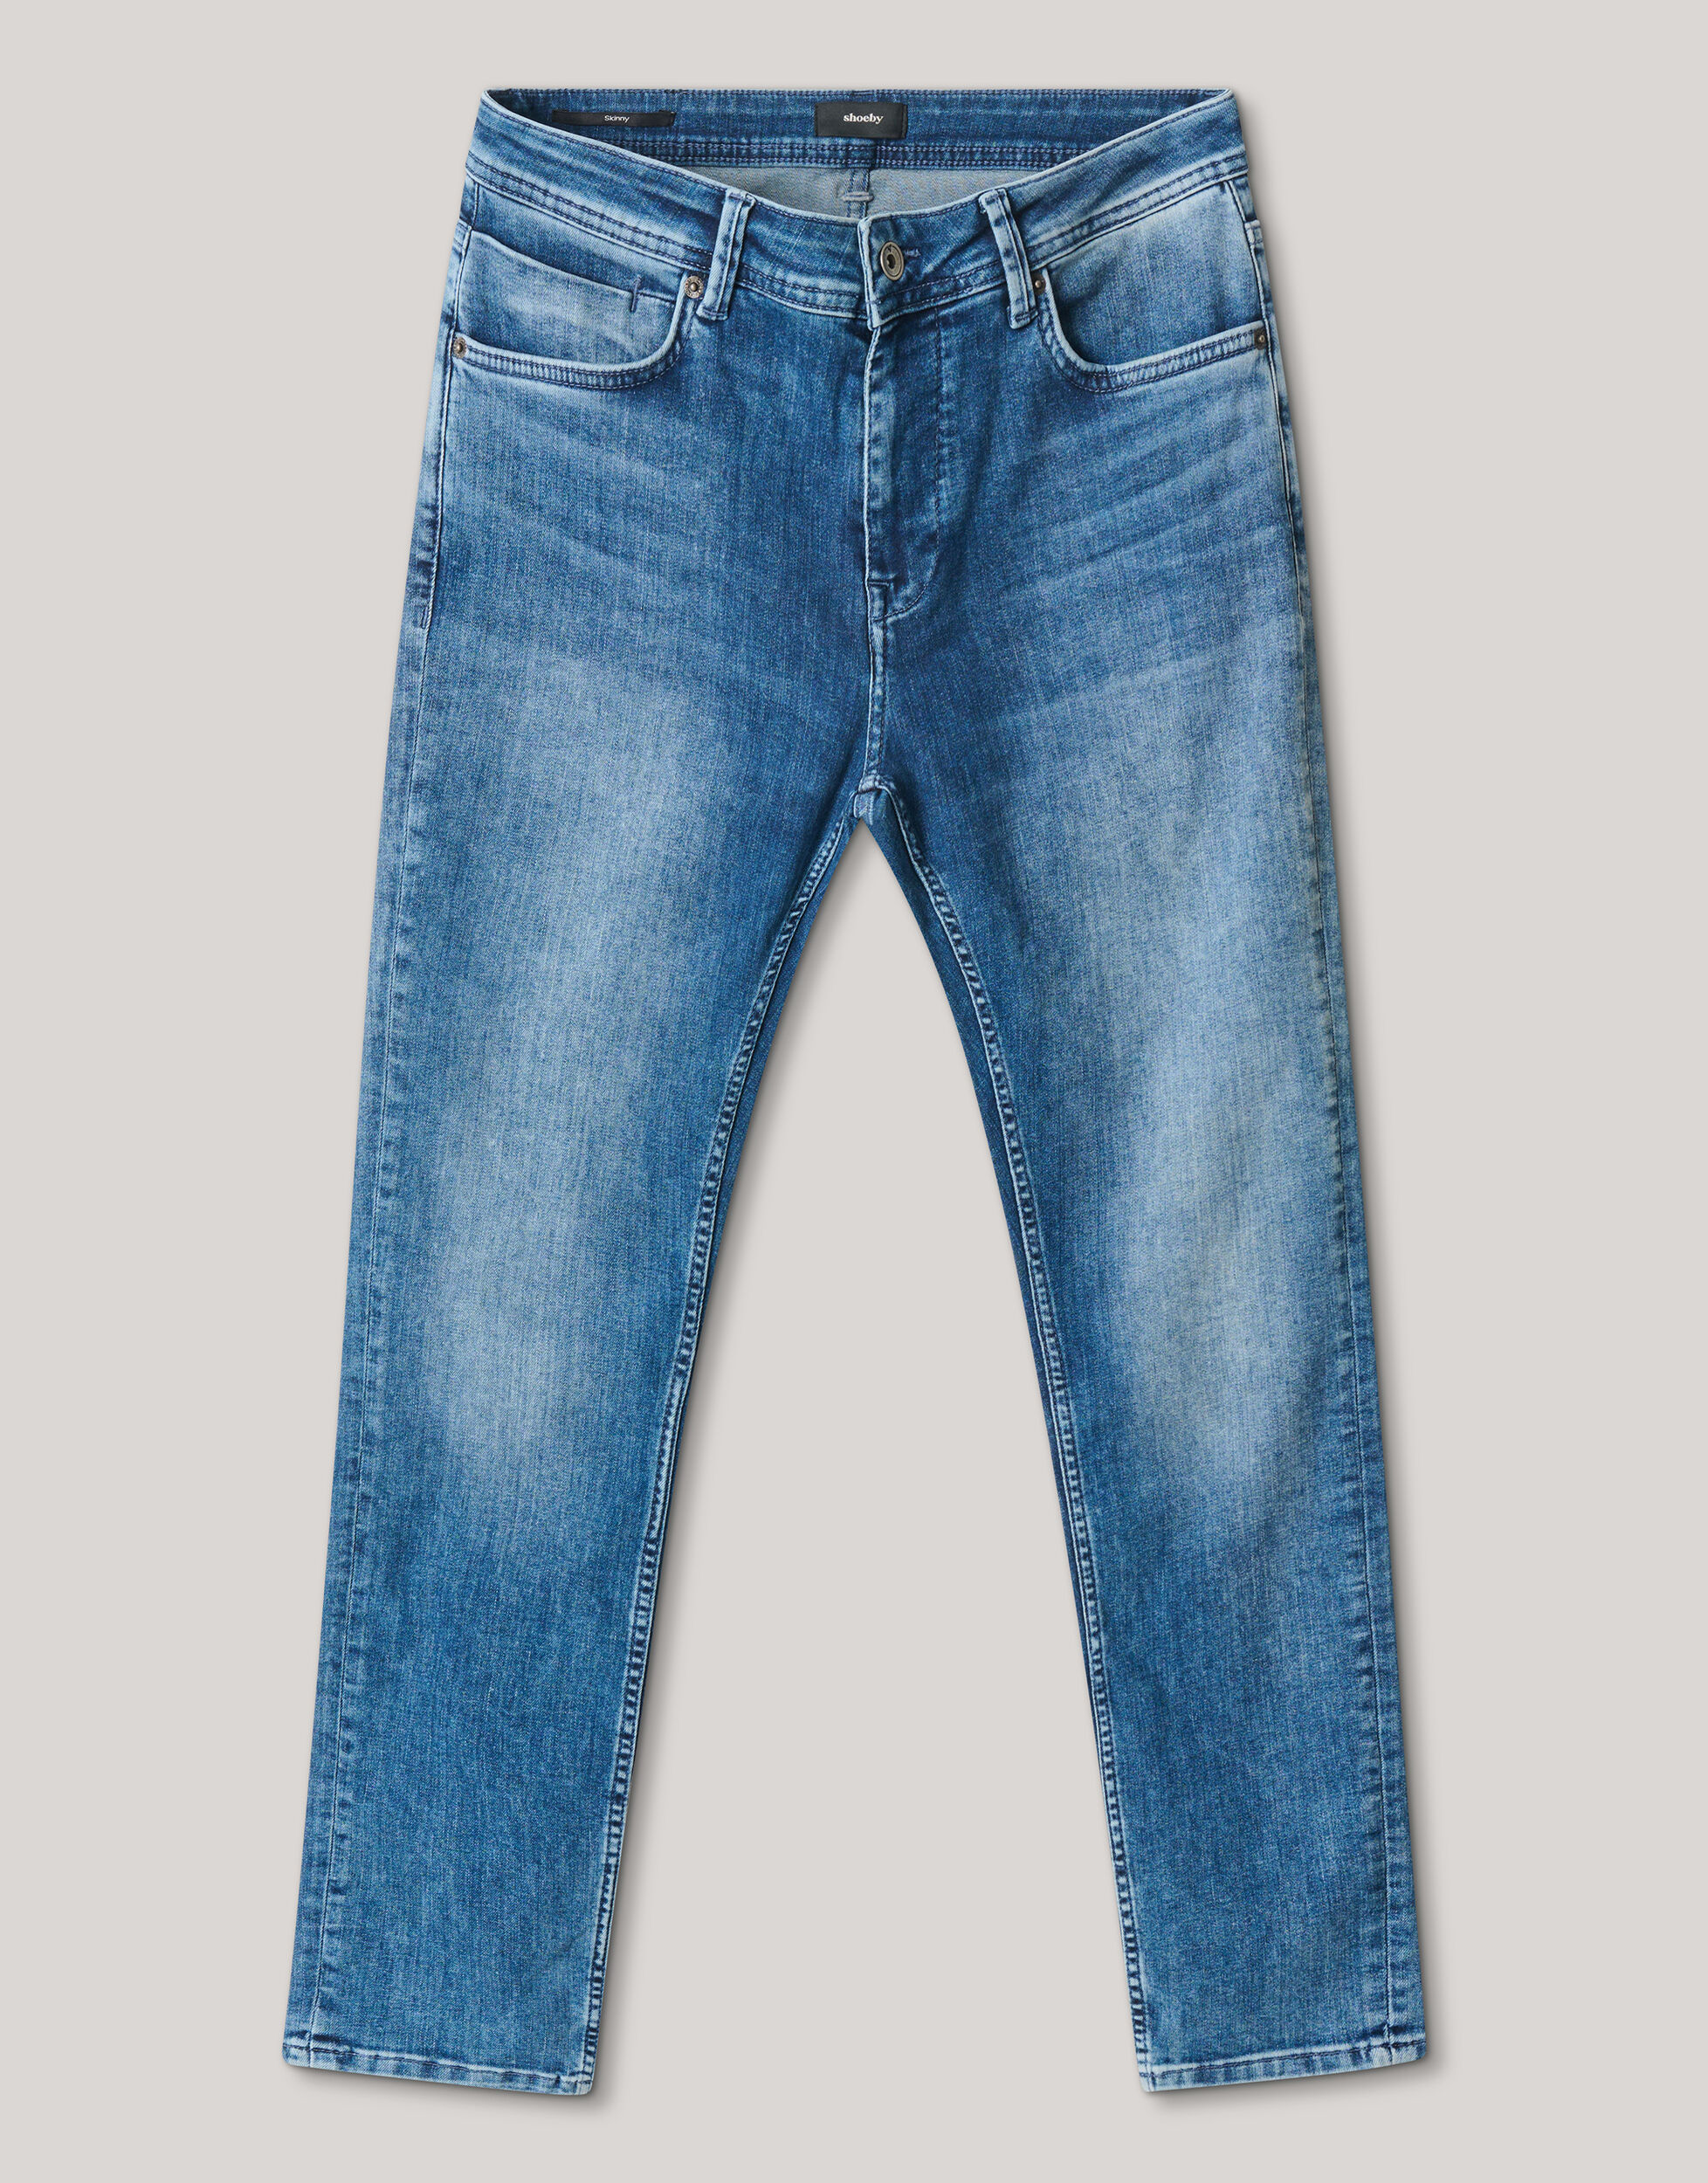 Skinny Fit Jeans Mediumstone L32 Refill